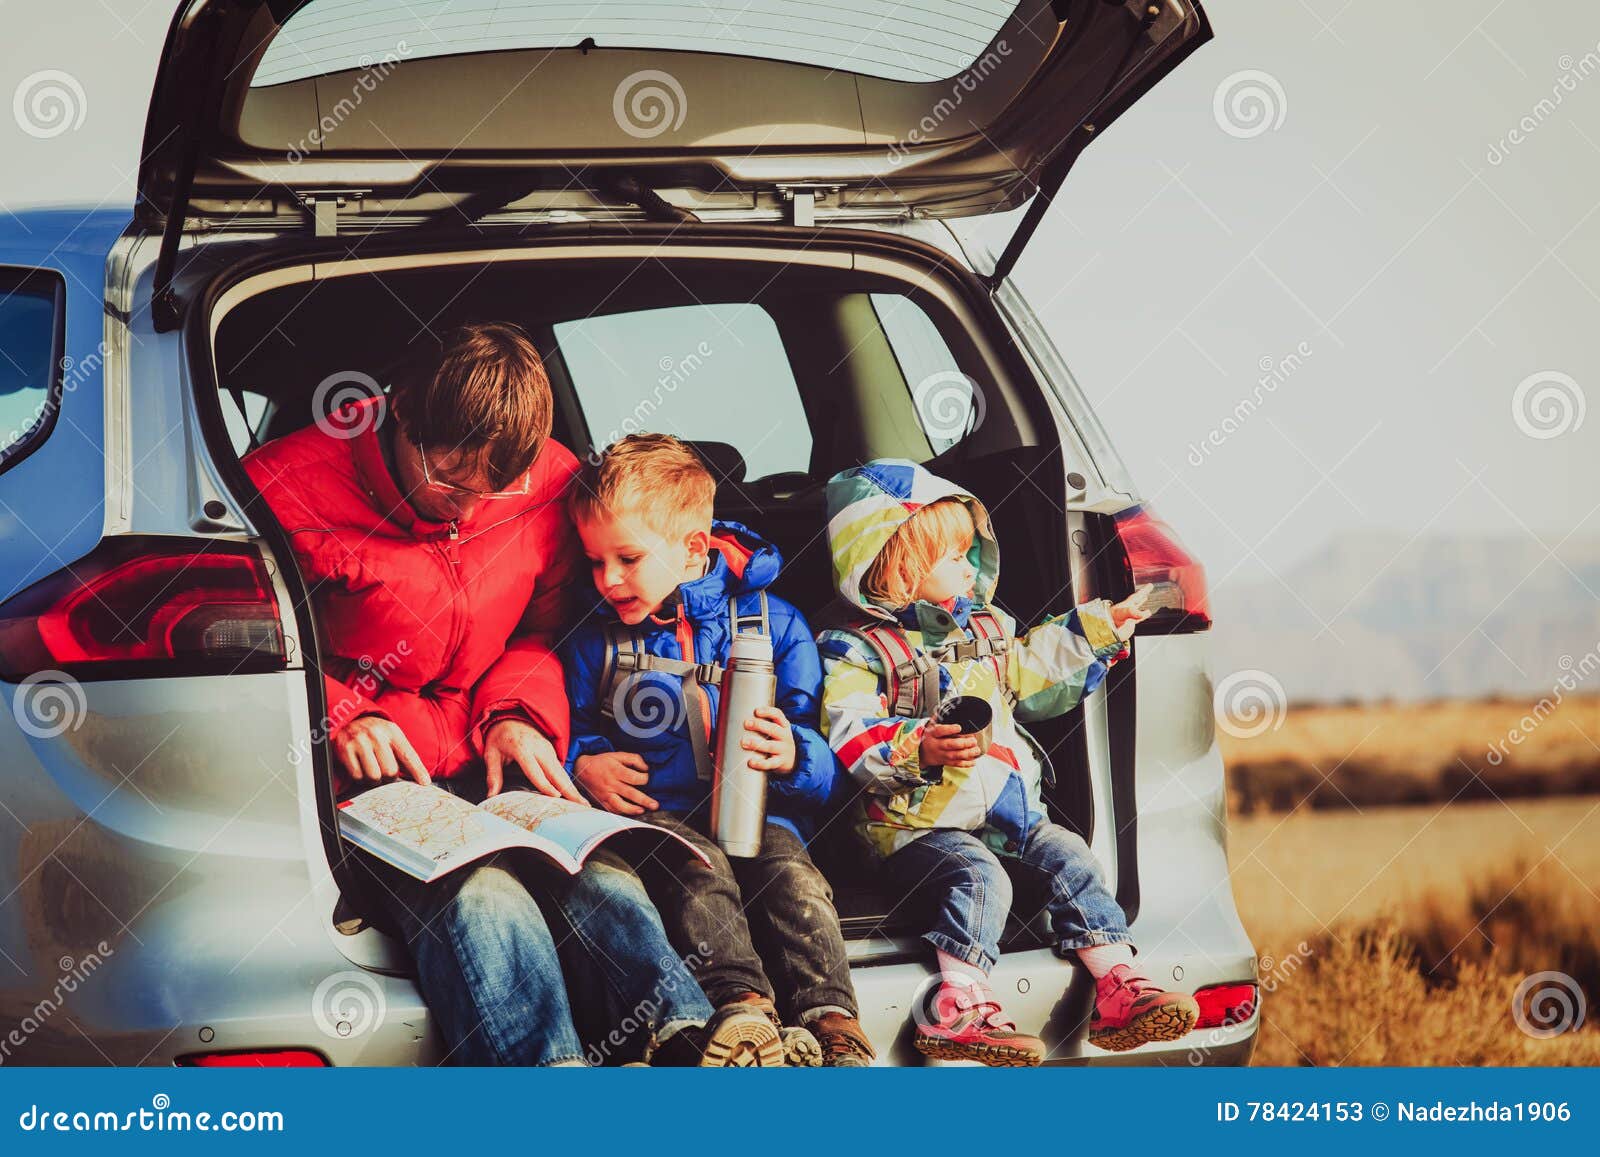 Костя вместе с семьей отправился в путешествие. Автопутешествие с детьми. Машина для путешествий семьей. Путешествие на машине с детьми. Папа и дети в путешествии.